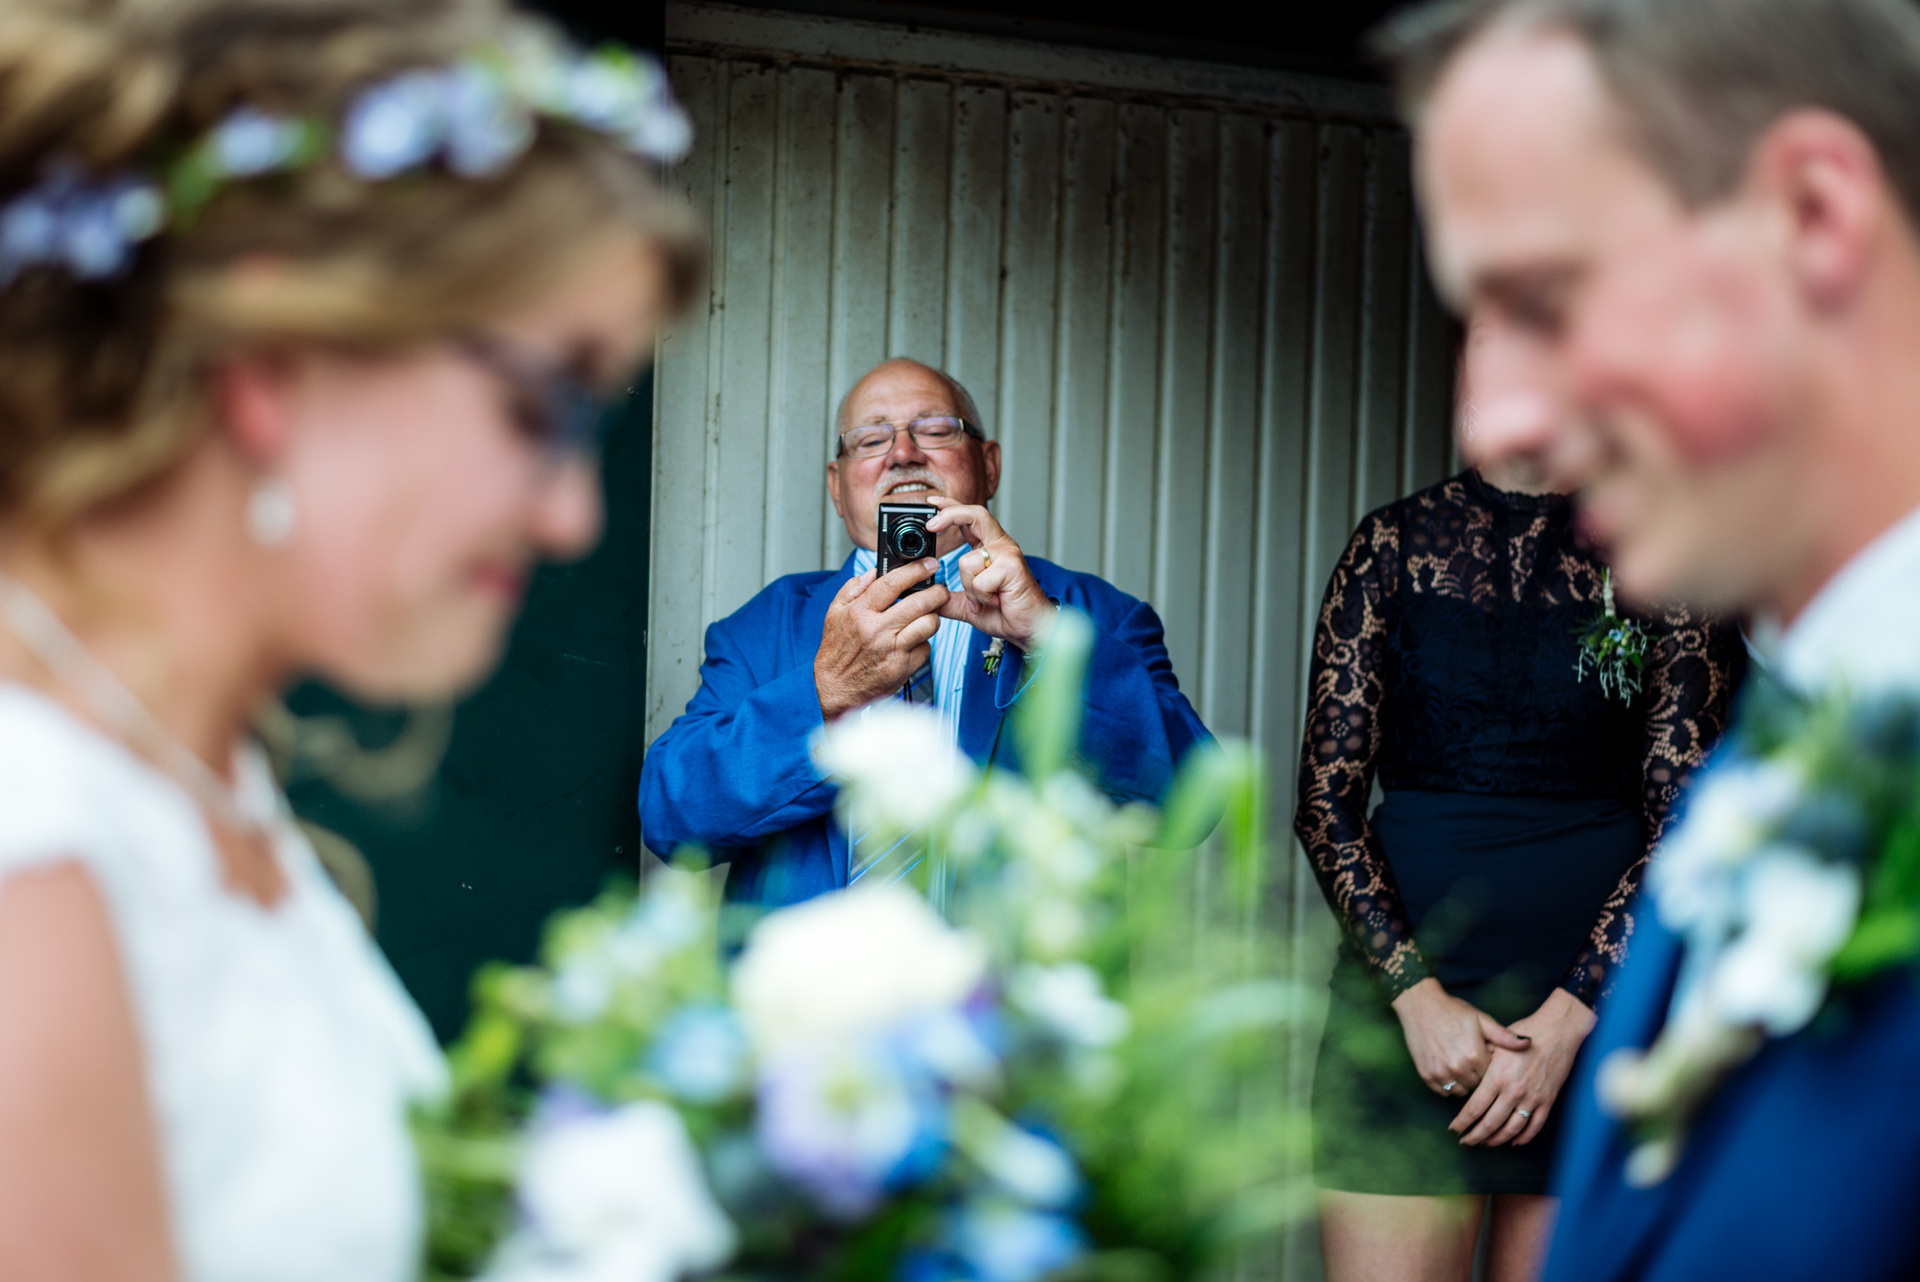 Bruidsfotograaf Trouwen op de Hei - De Mof - Leusden